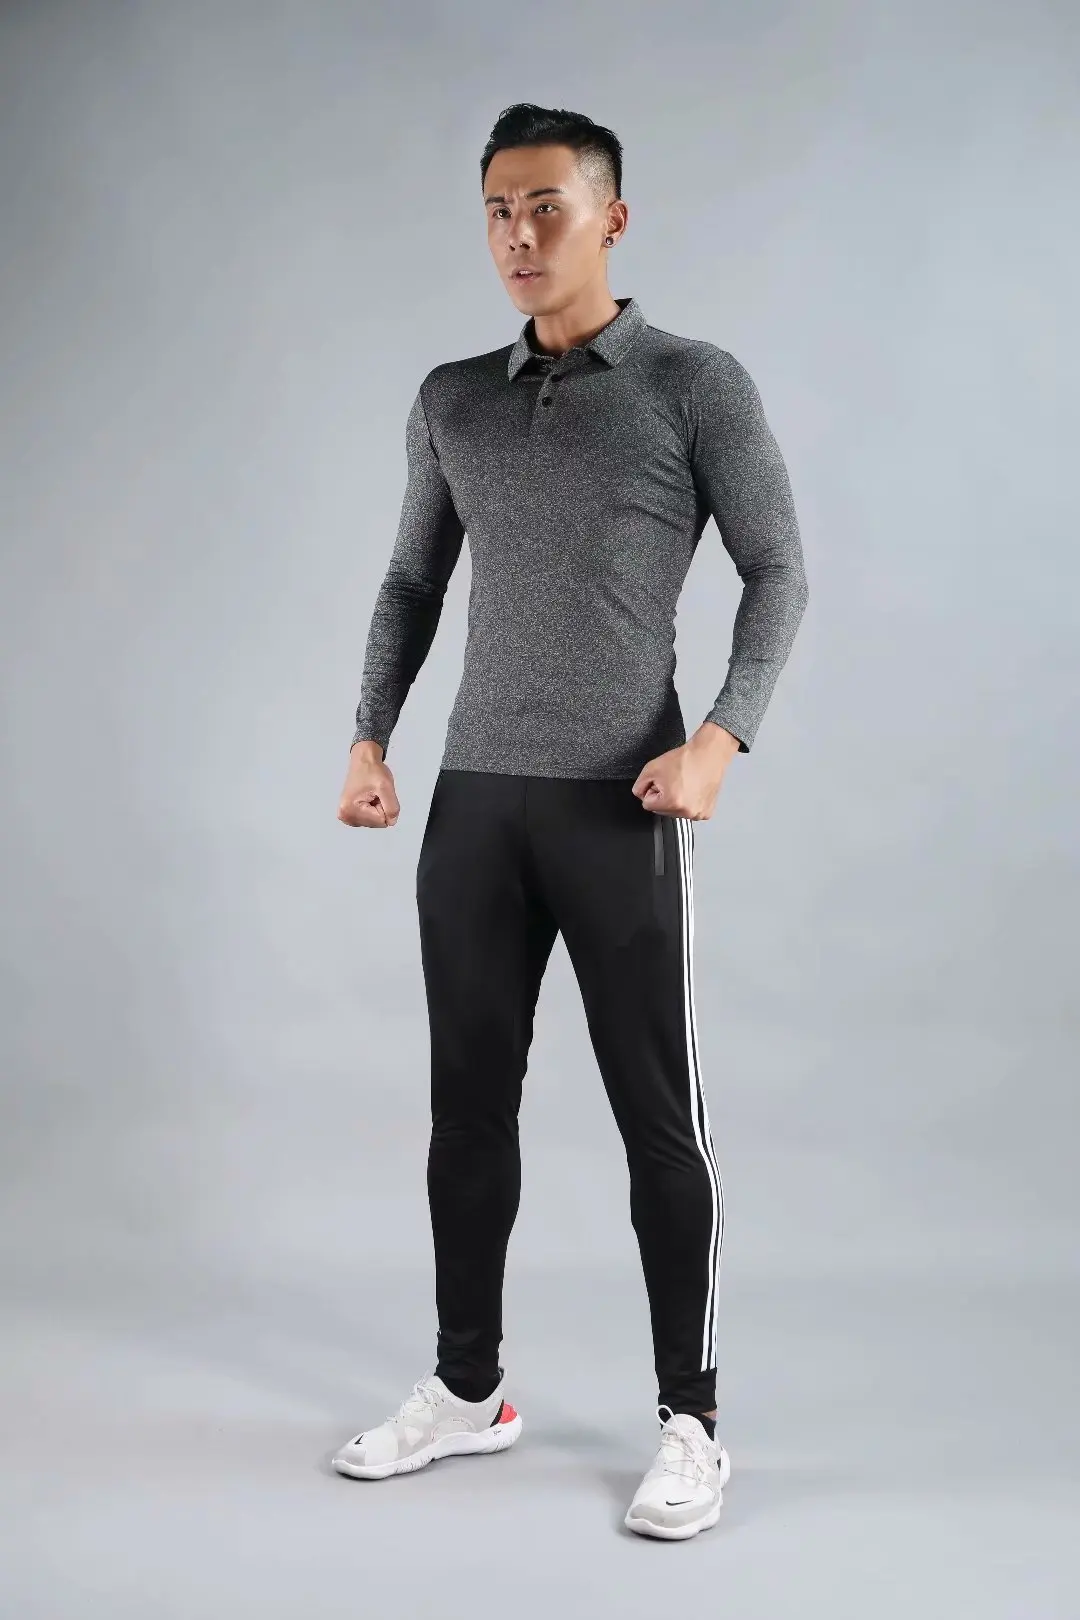 Мужская футболка поло с длинным рукавом, дышащая, осенняя, для спорта, фитнеса, спортзала, бега, одноцветная, тонкая, для тренировок, пробежек, тренировок, поло, топы